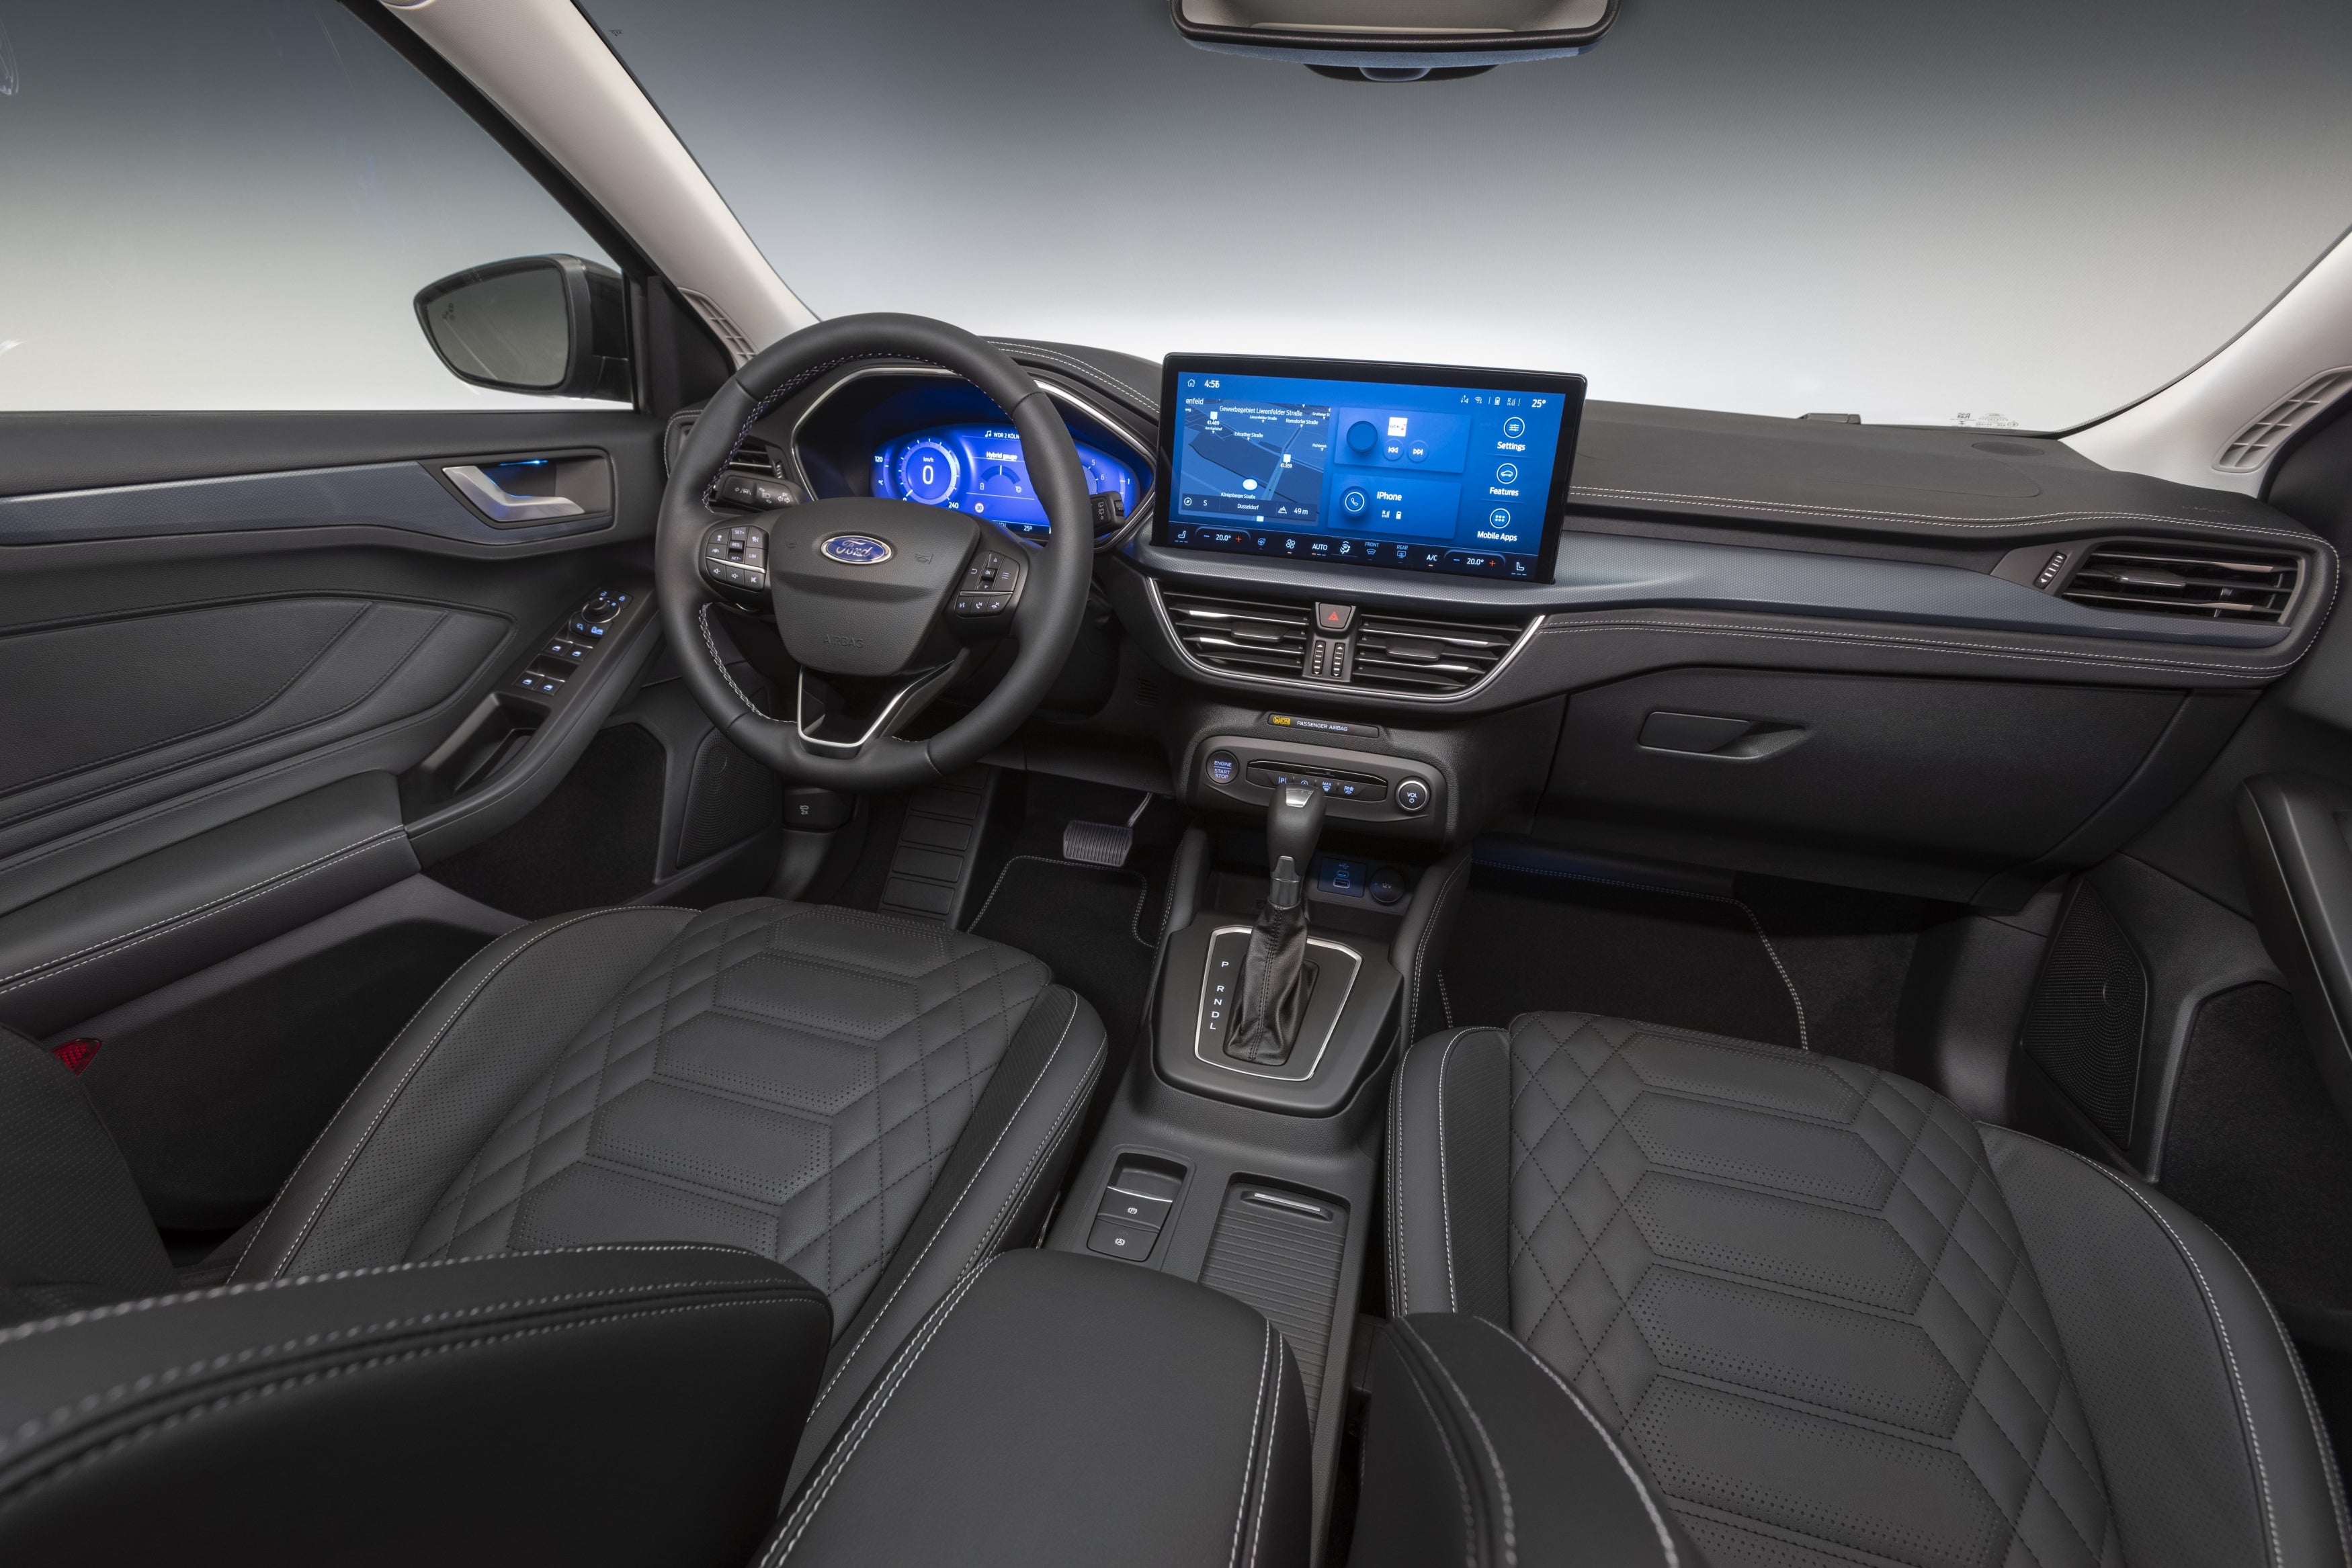 Ford Focus interior - Cockpit